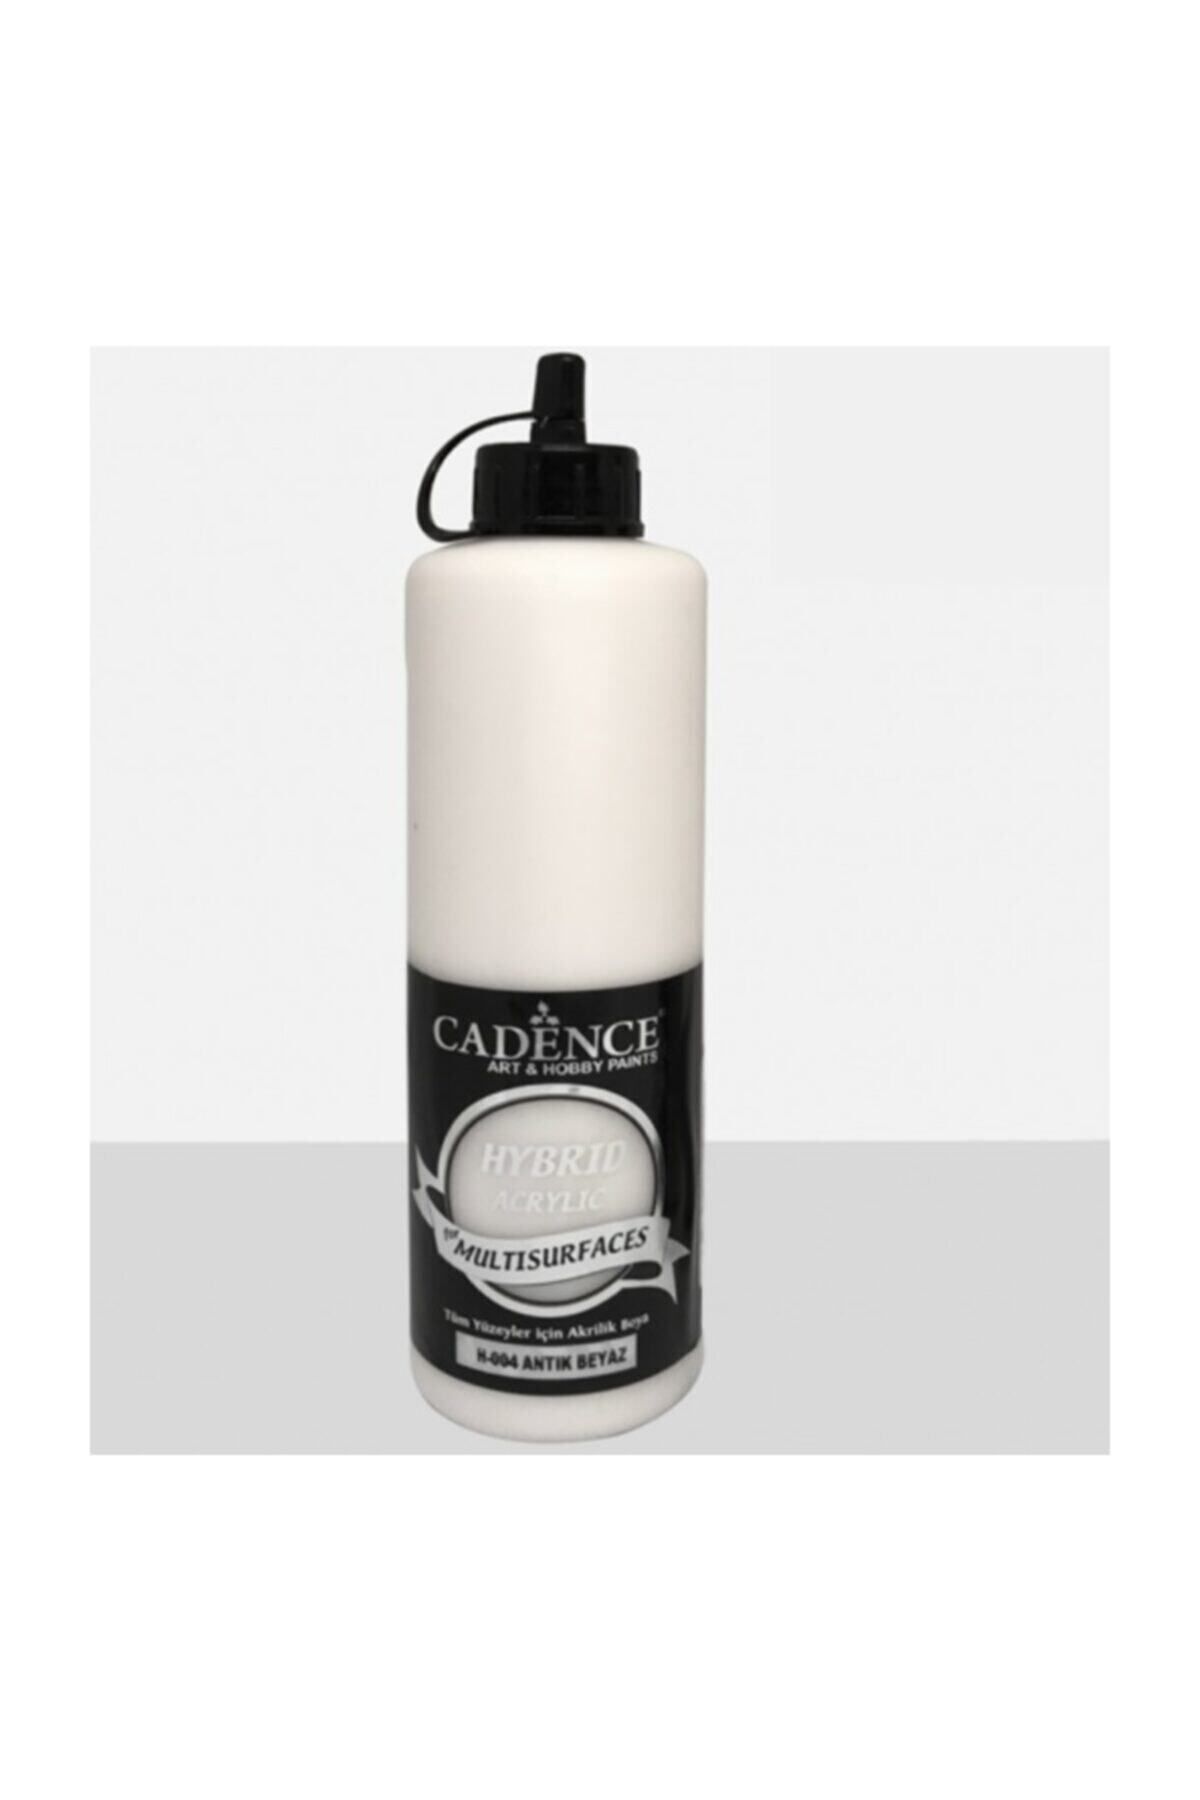 Cadence Hybrid Akrilik Multisurfaces Boya H-004 Antik Beyaz 500 ml